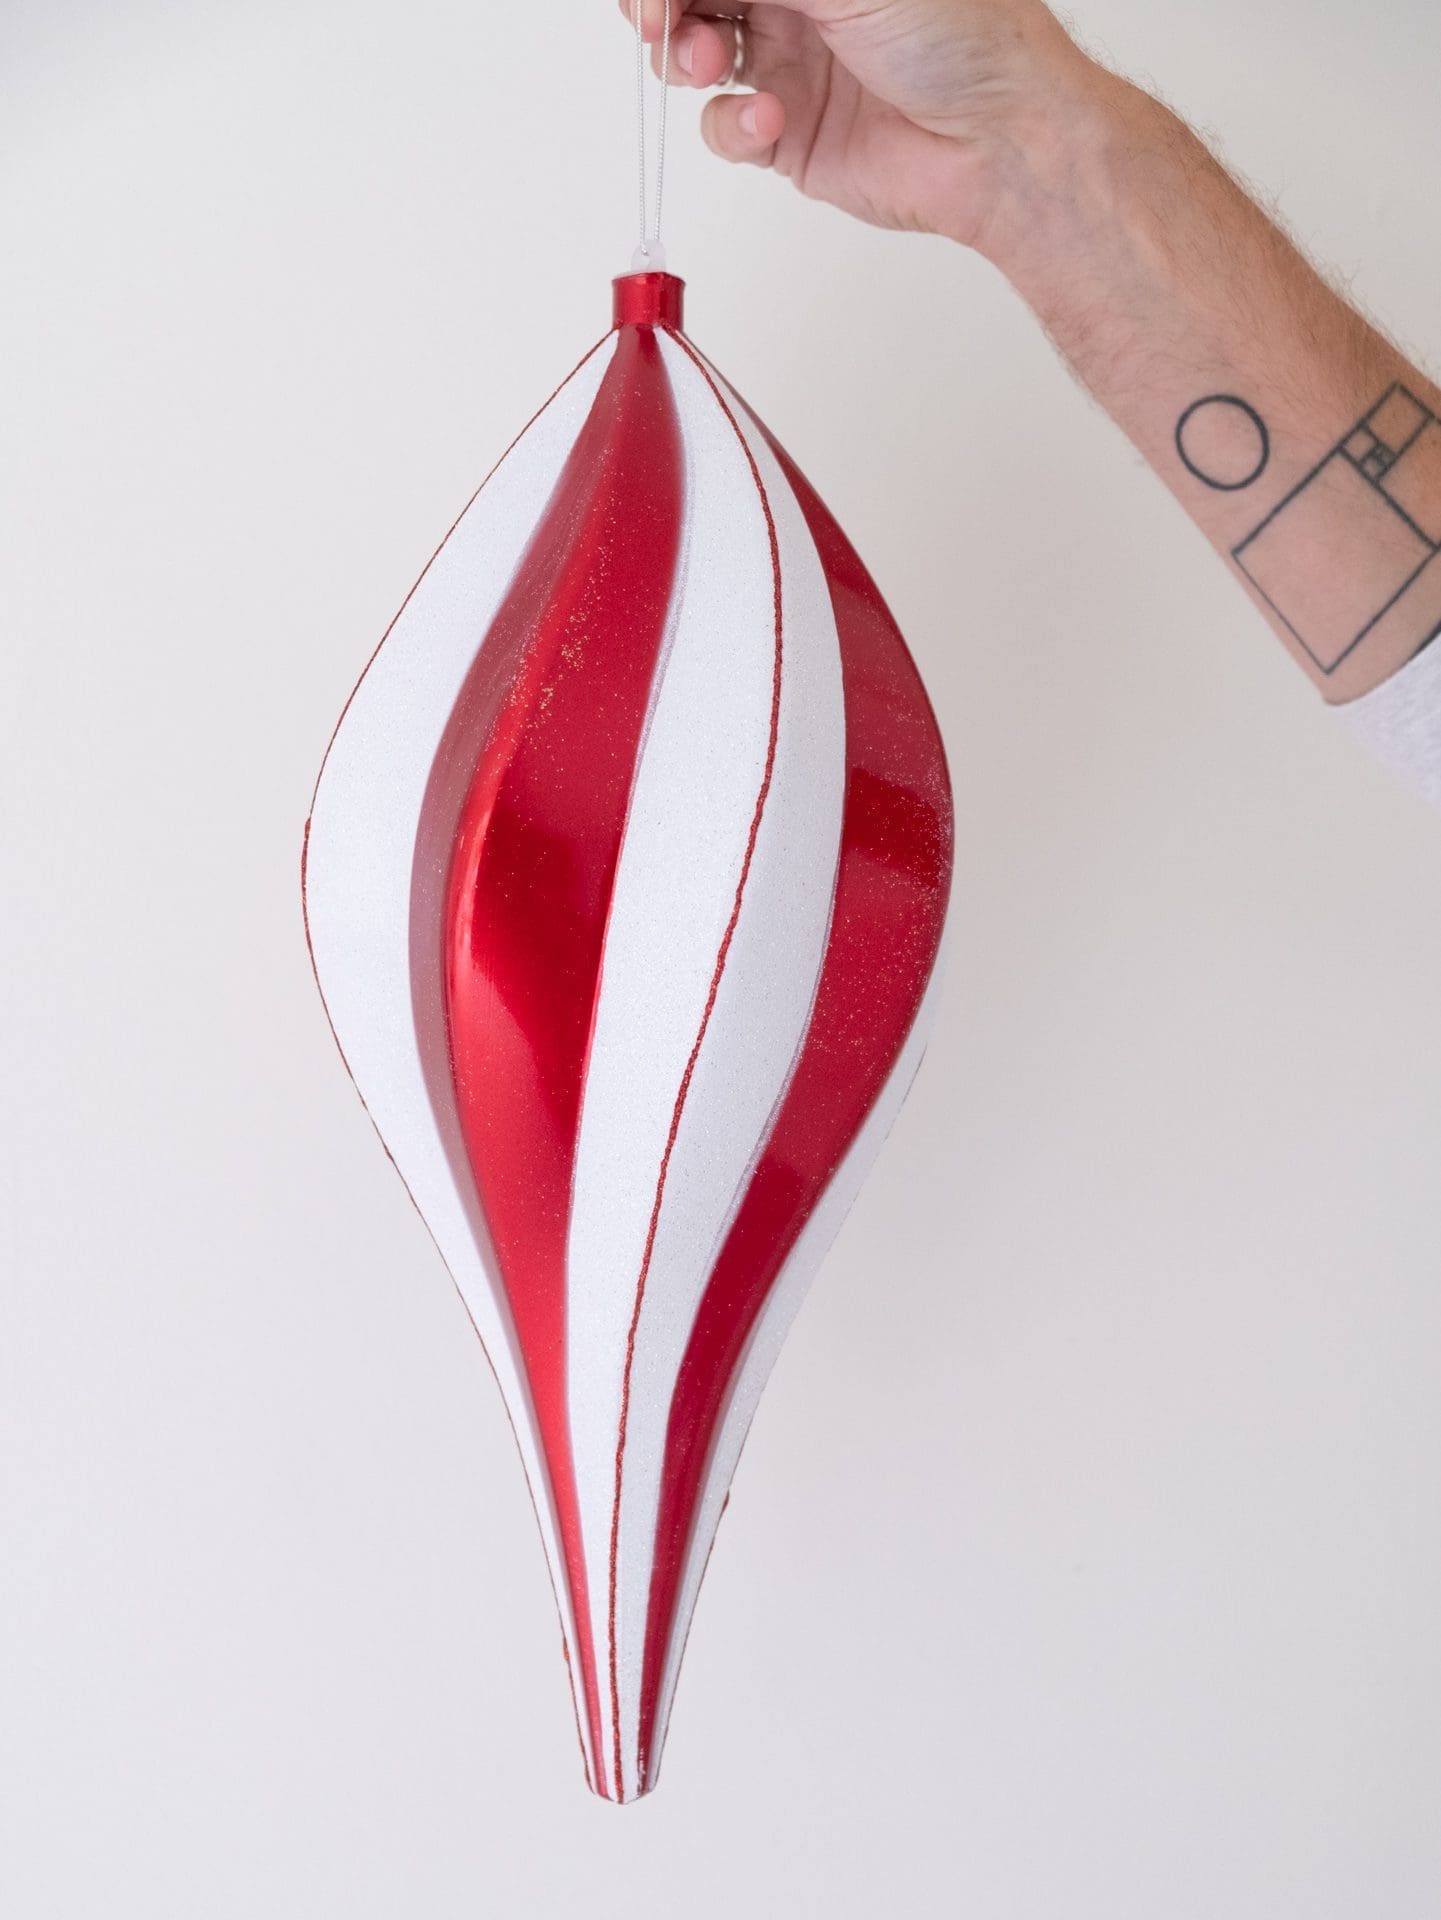 Julepynt  -  Slik - Spiral - Rød  -  40 cm